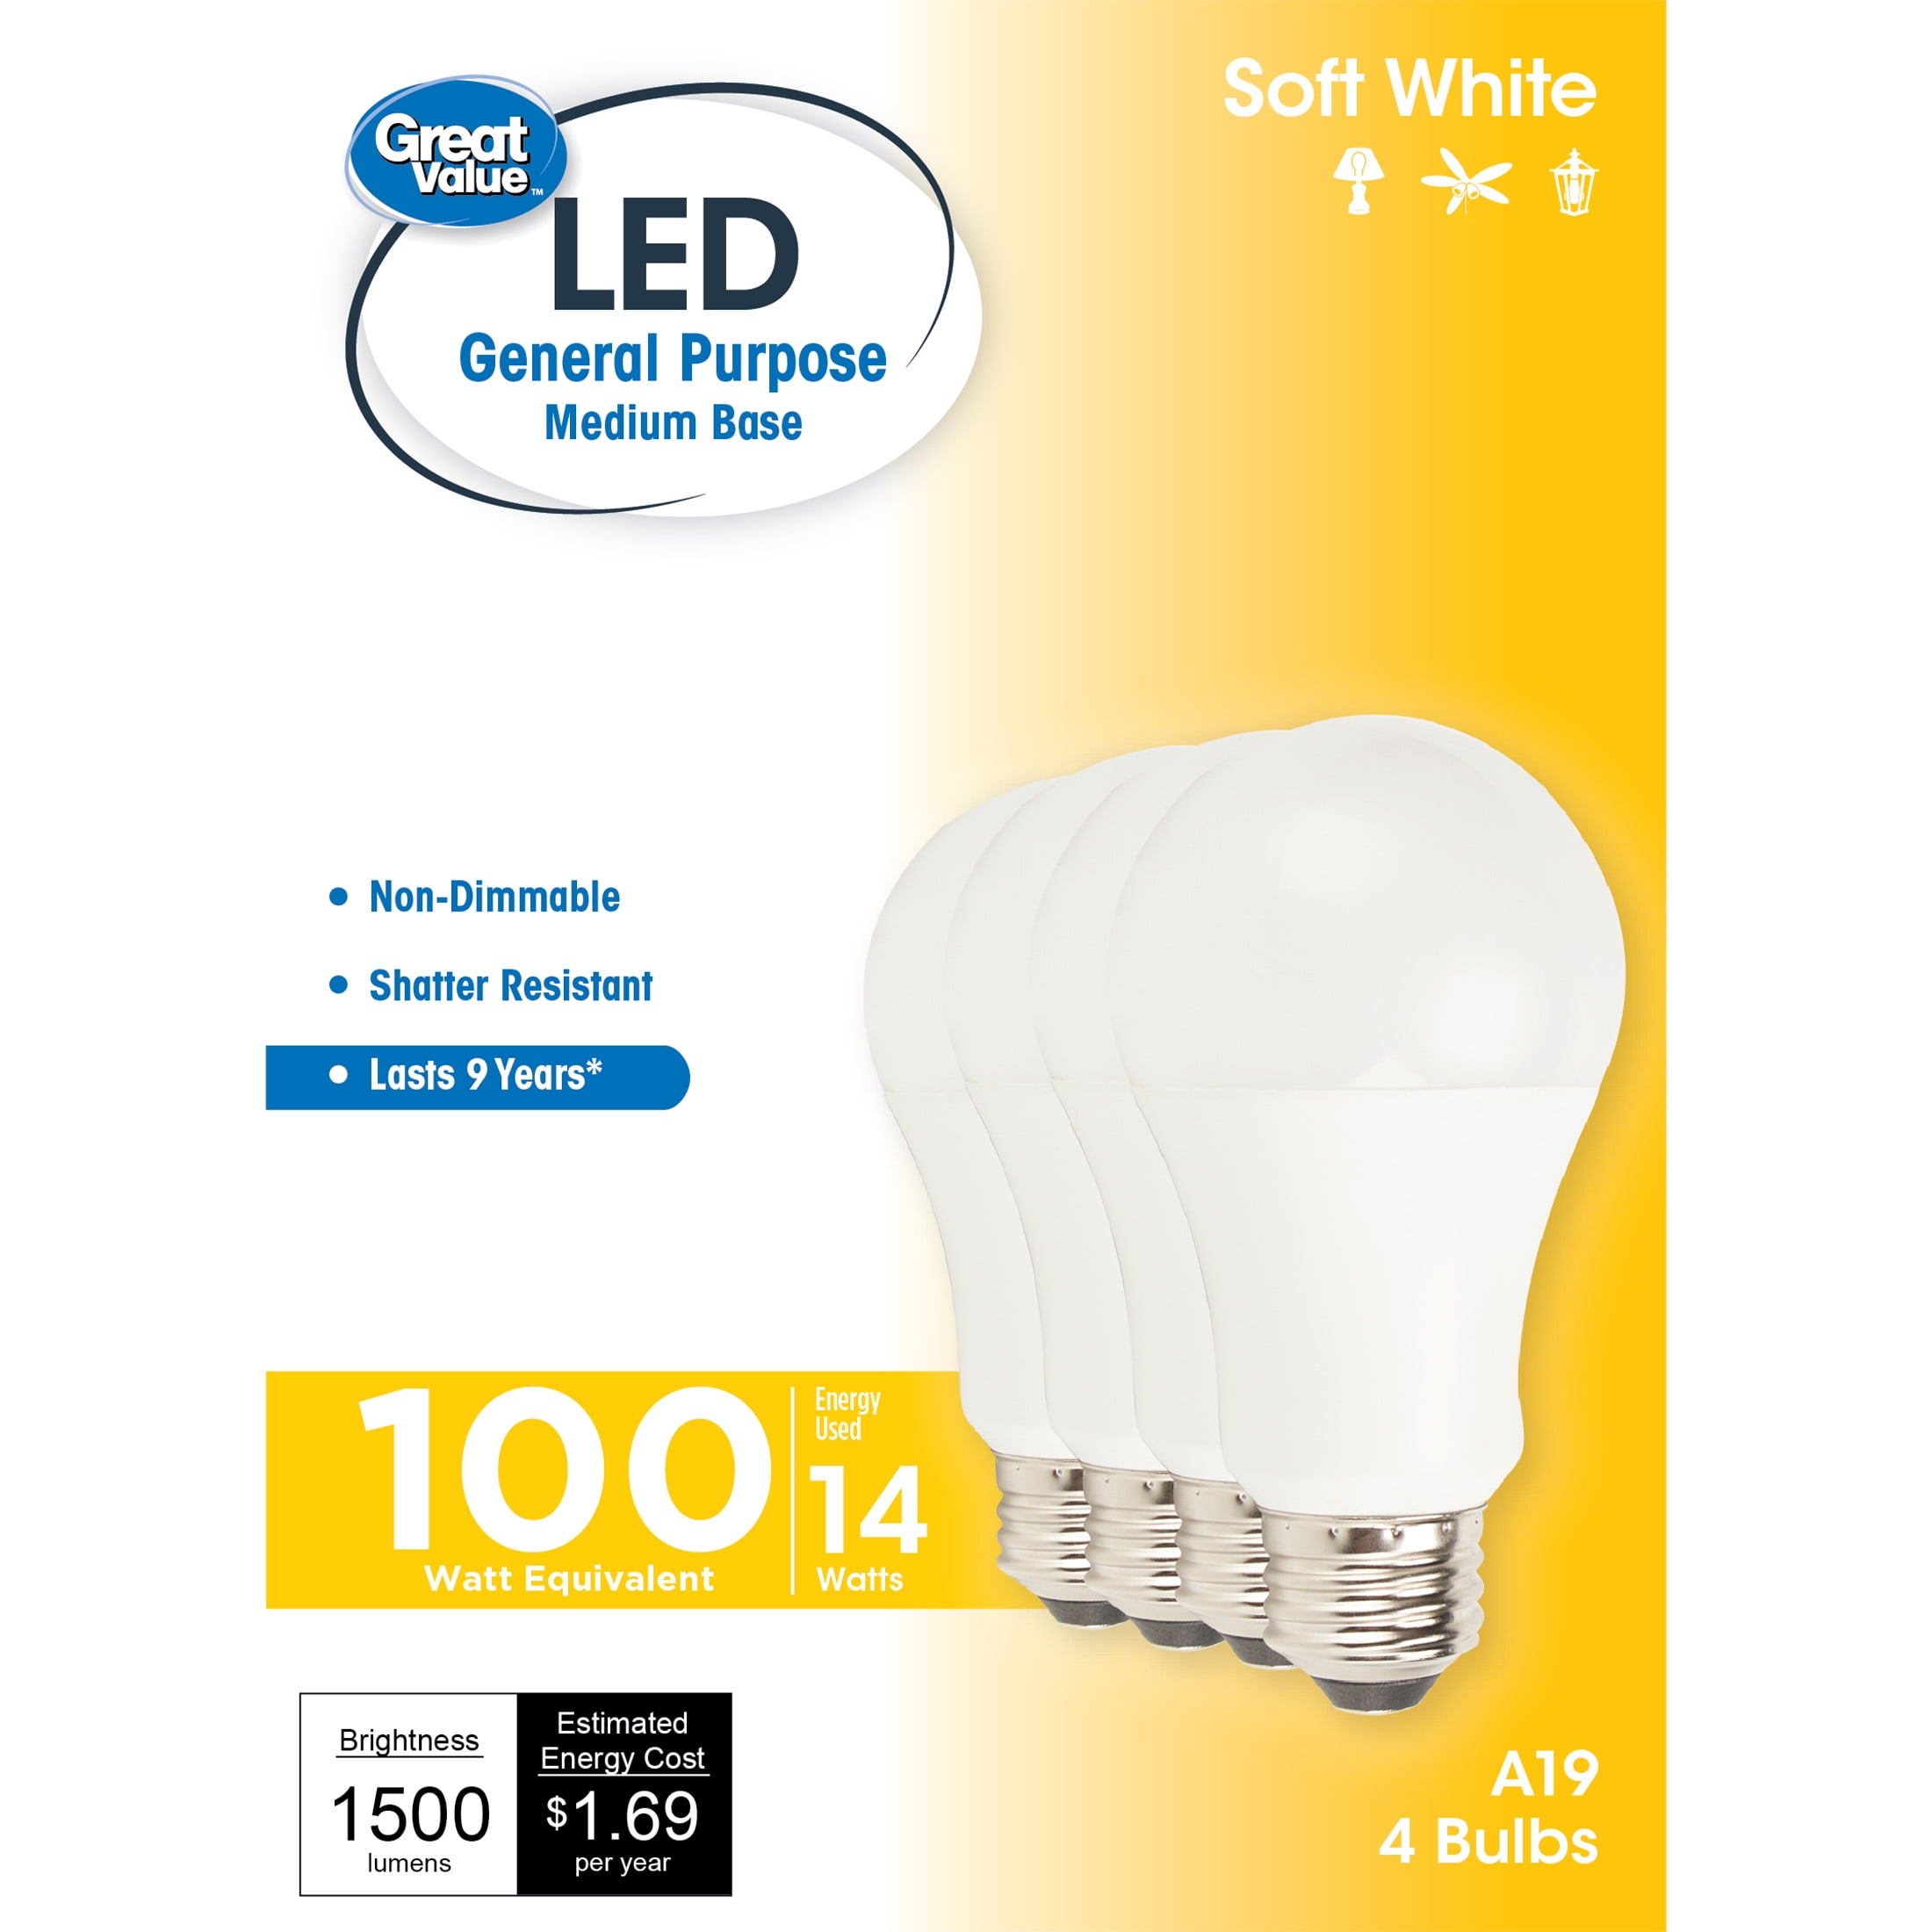 Lot de 10 ampoules LED E27 14W Equivalent 100W